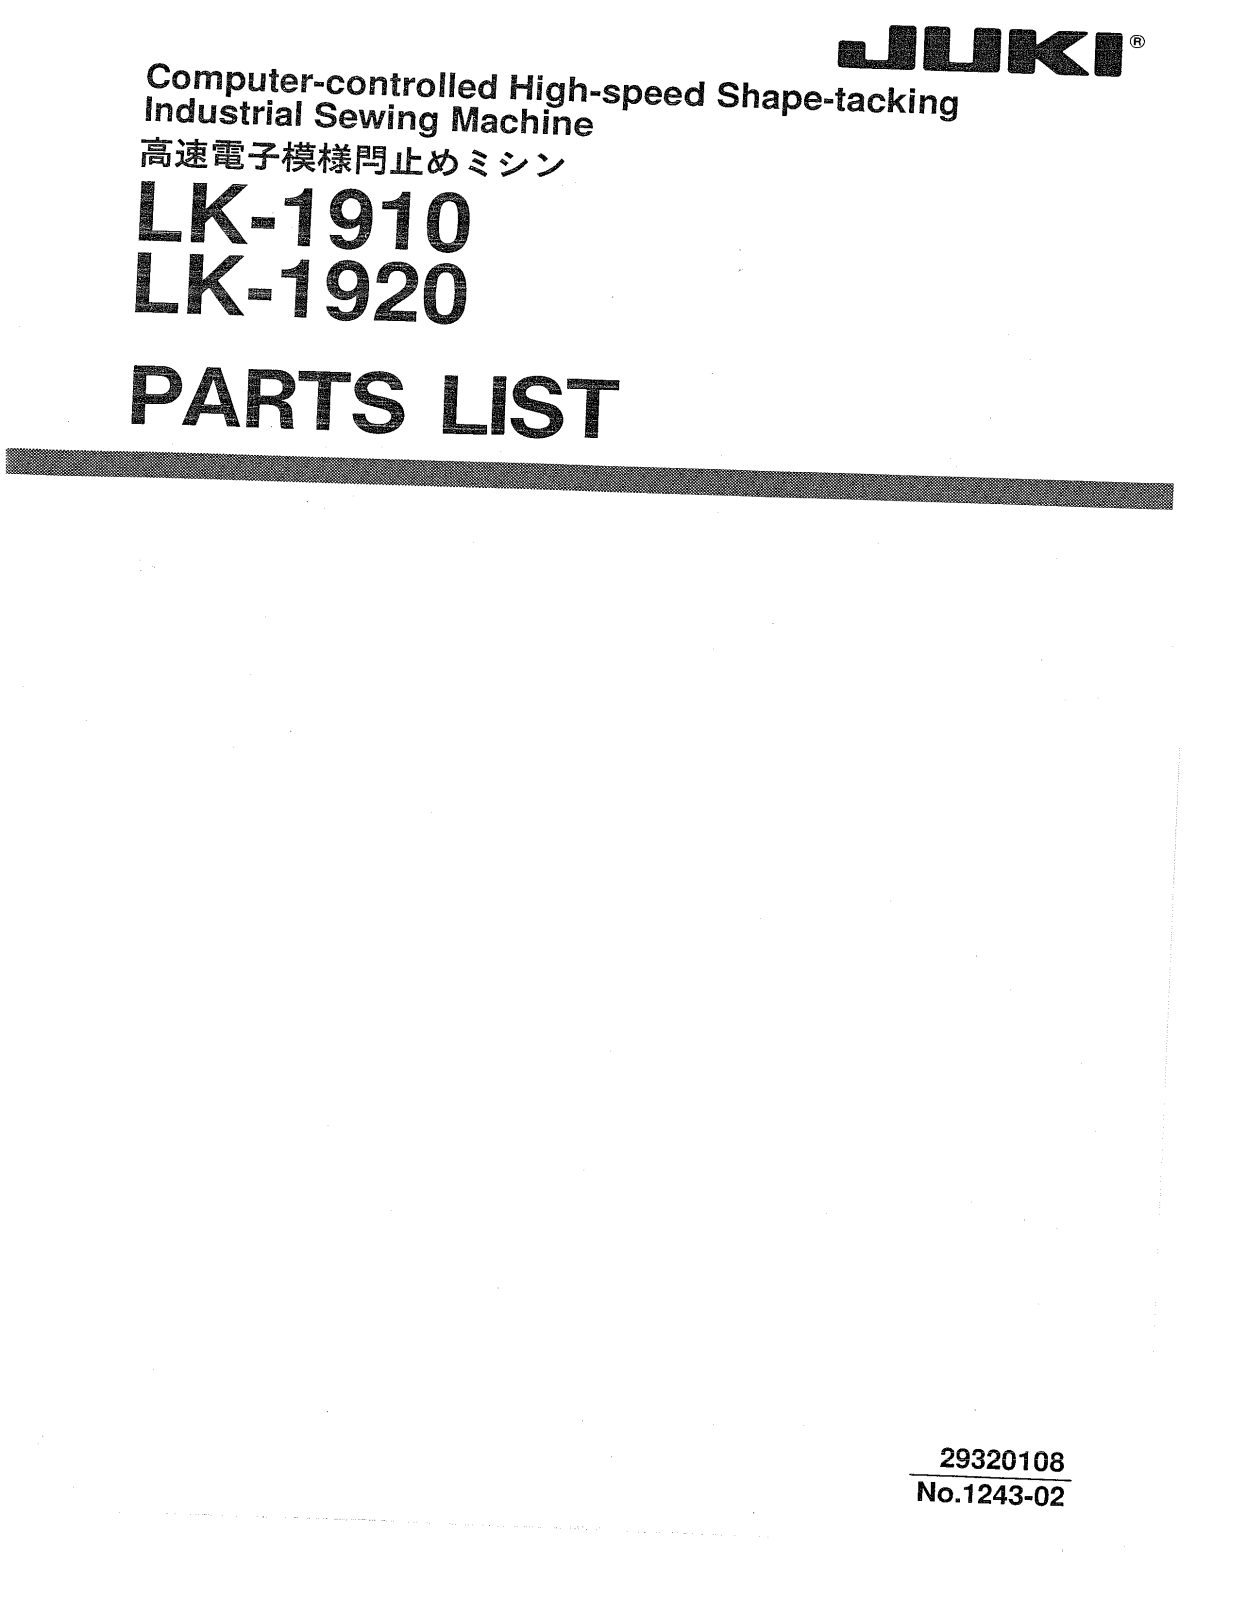 Juki LK-1910, LK-1920 Parts List